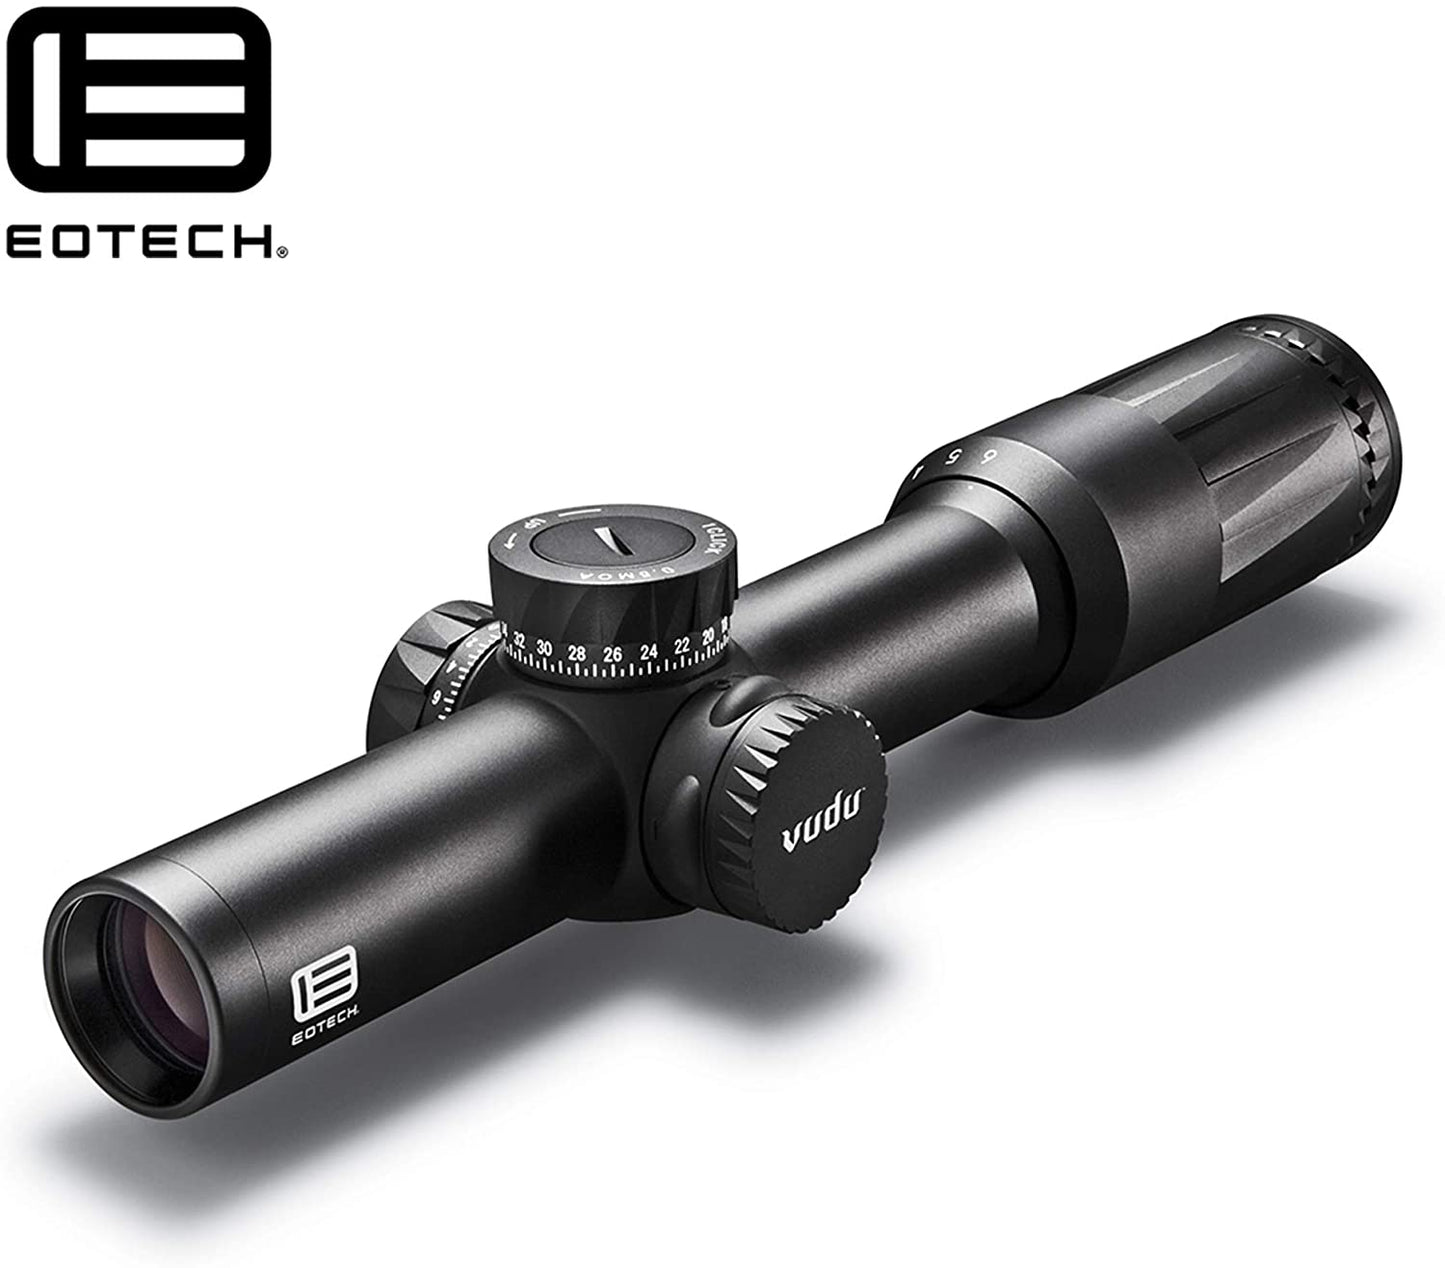 EOTECH Vudu 1-6x24 FFP Riflescope - SR2 Reticle (MOA) - VDU1-6FFSR2